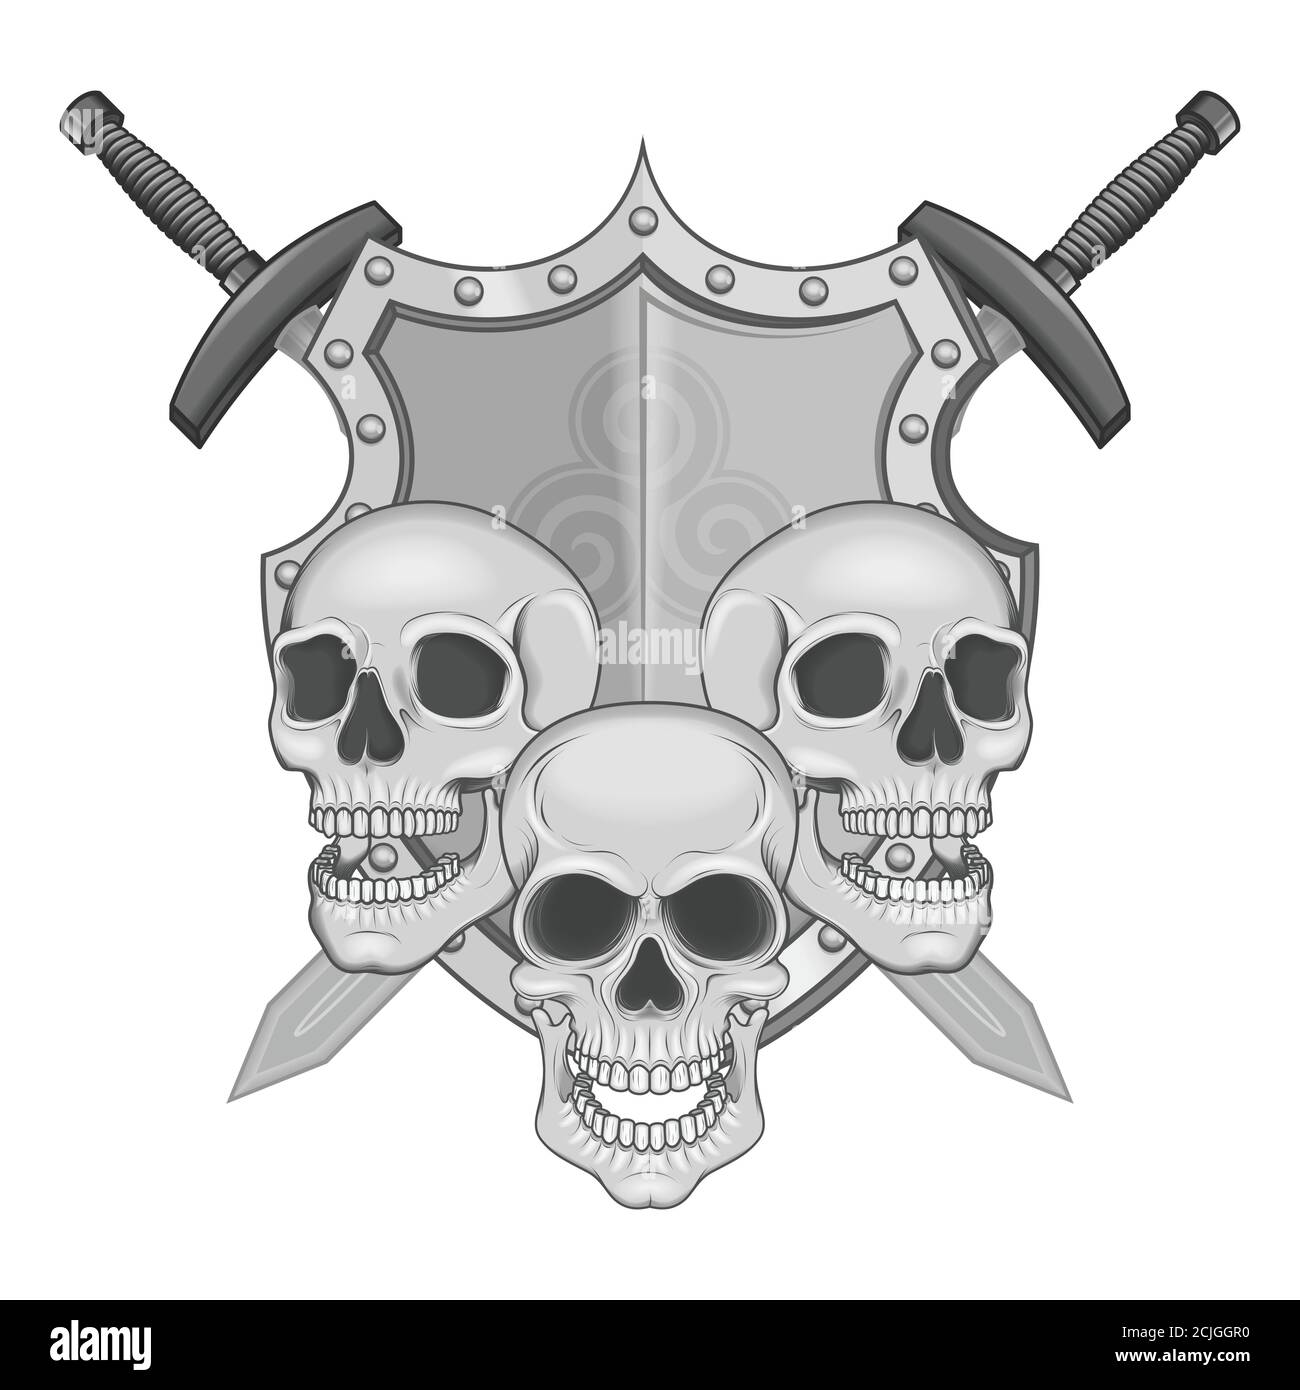 Illustration de crânes bouclier et épées, art traditionnel de haute qualité avec des paillettes et des ombres, le tout sur fond blanc Illustration de Vecteur